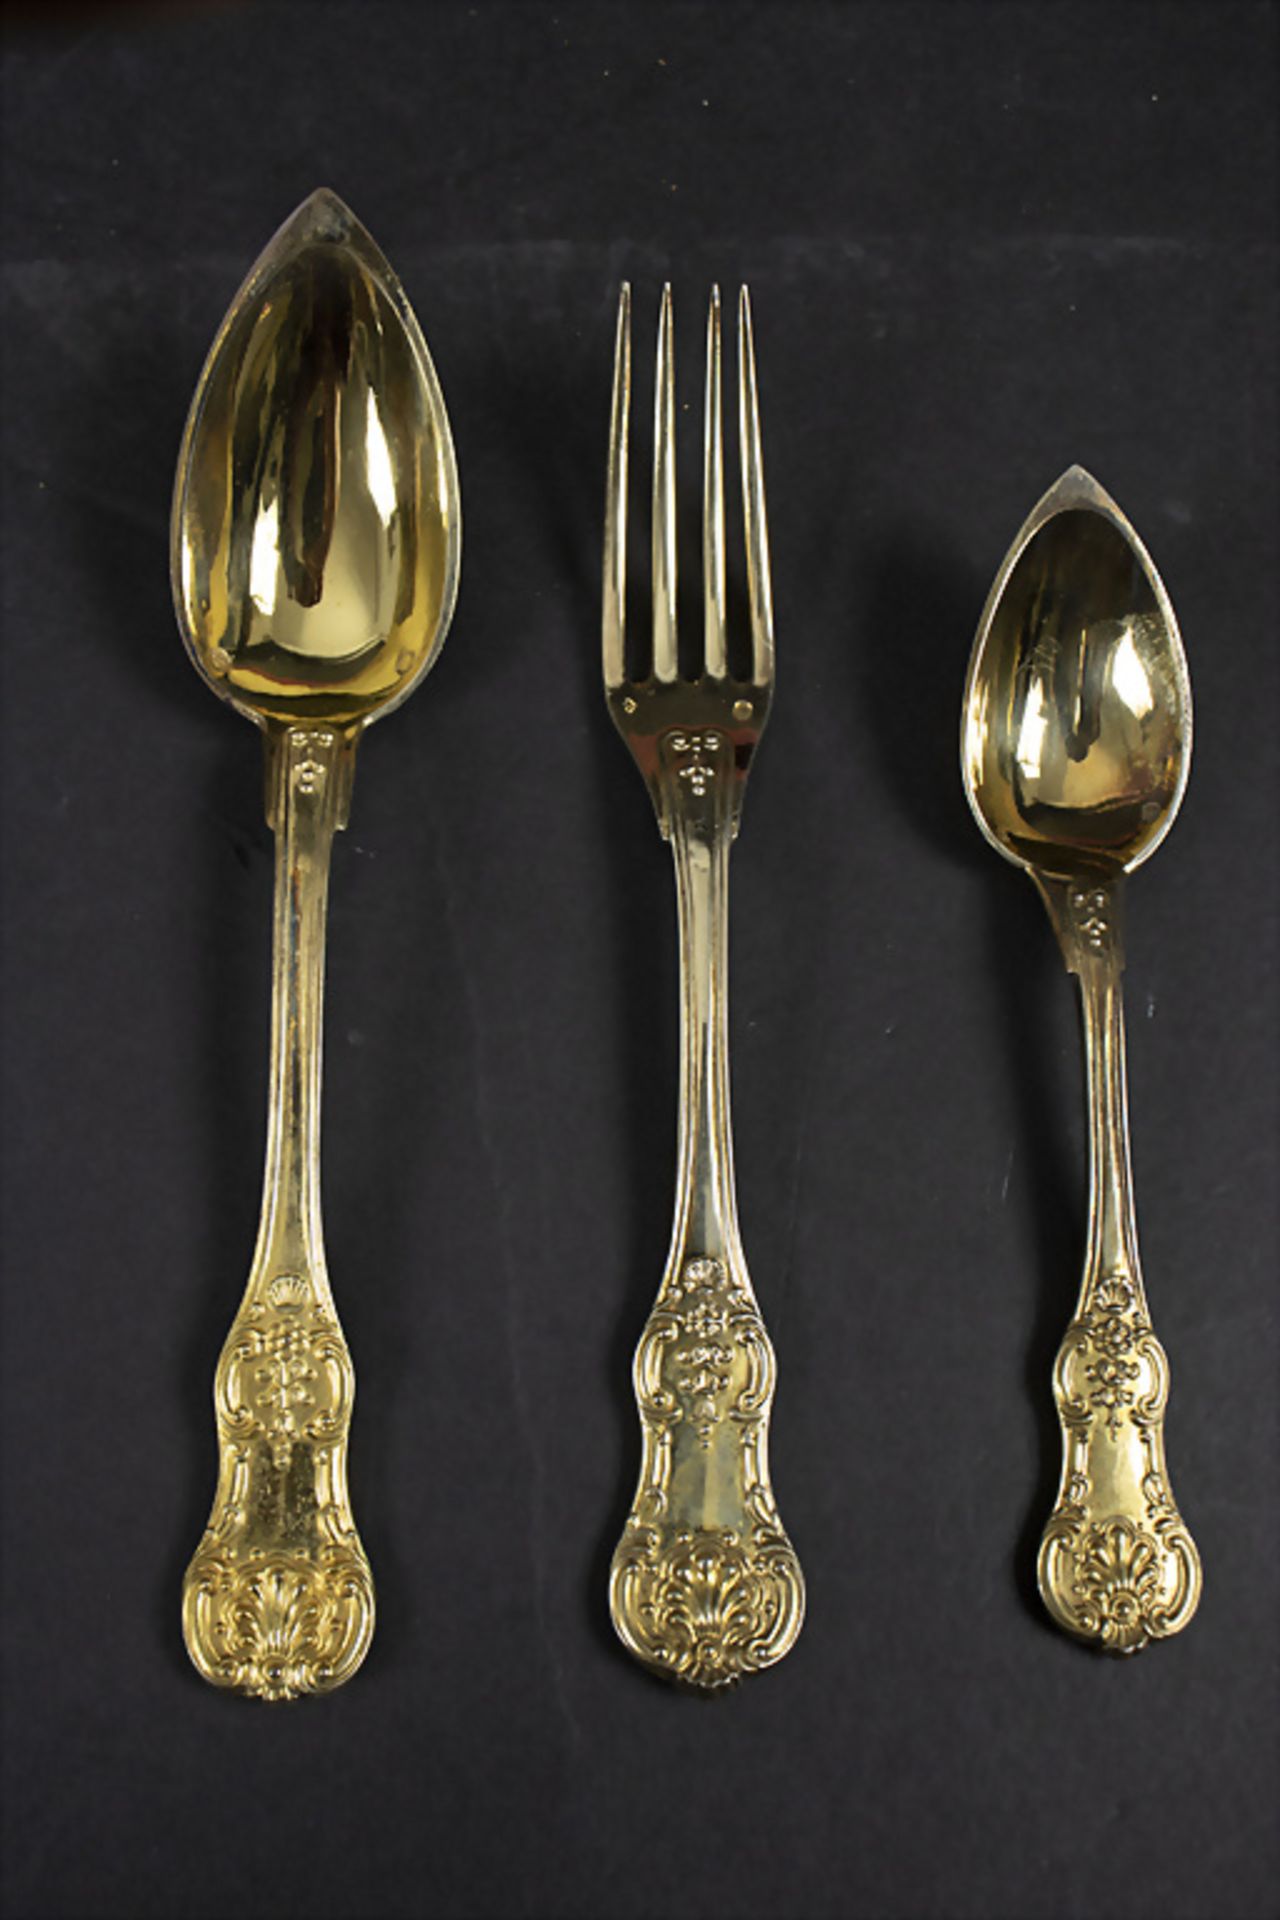 Silberbesteck für 24 Personen / 72 pieces of gilded silver cutlery, Francois Xavier Jeannotat, ... - Bild 4 aus 12